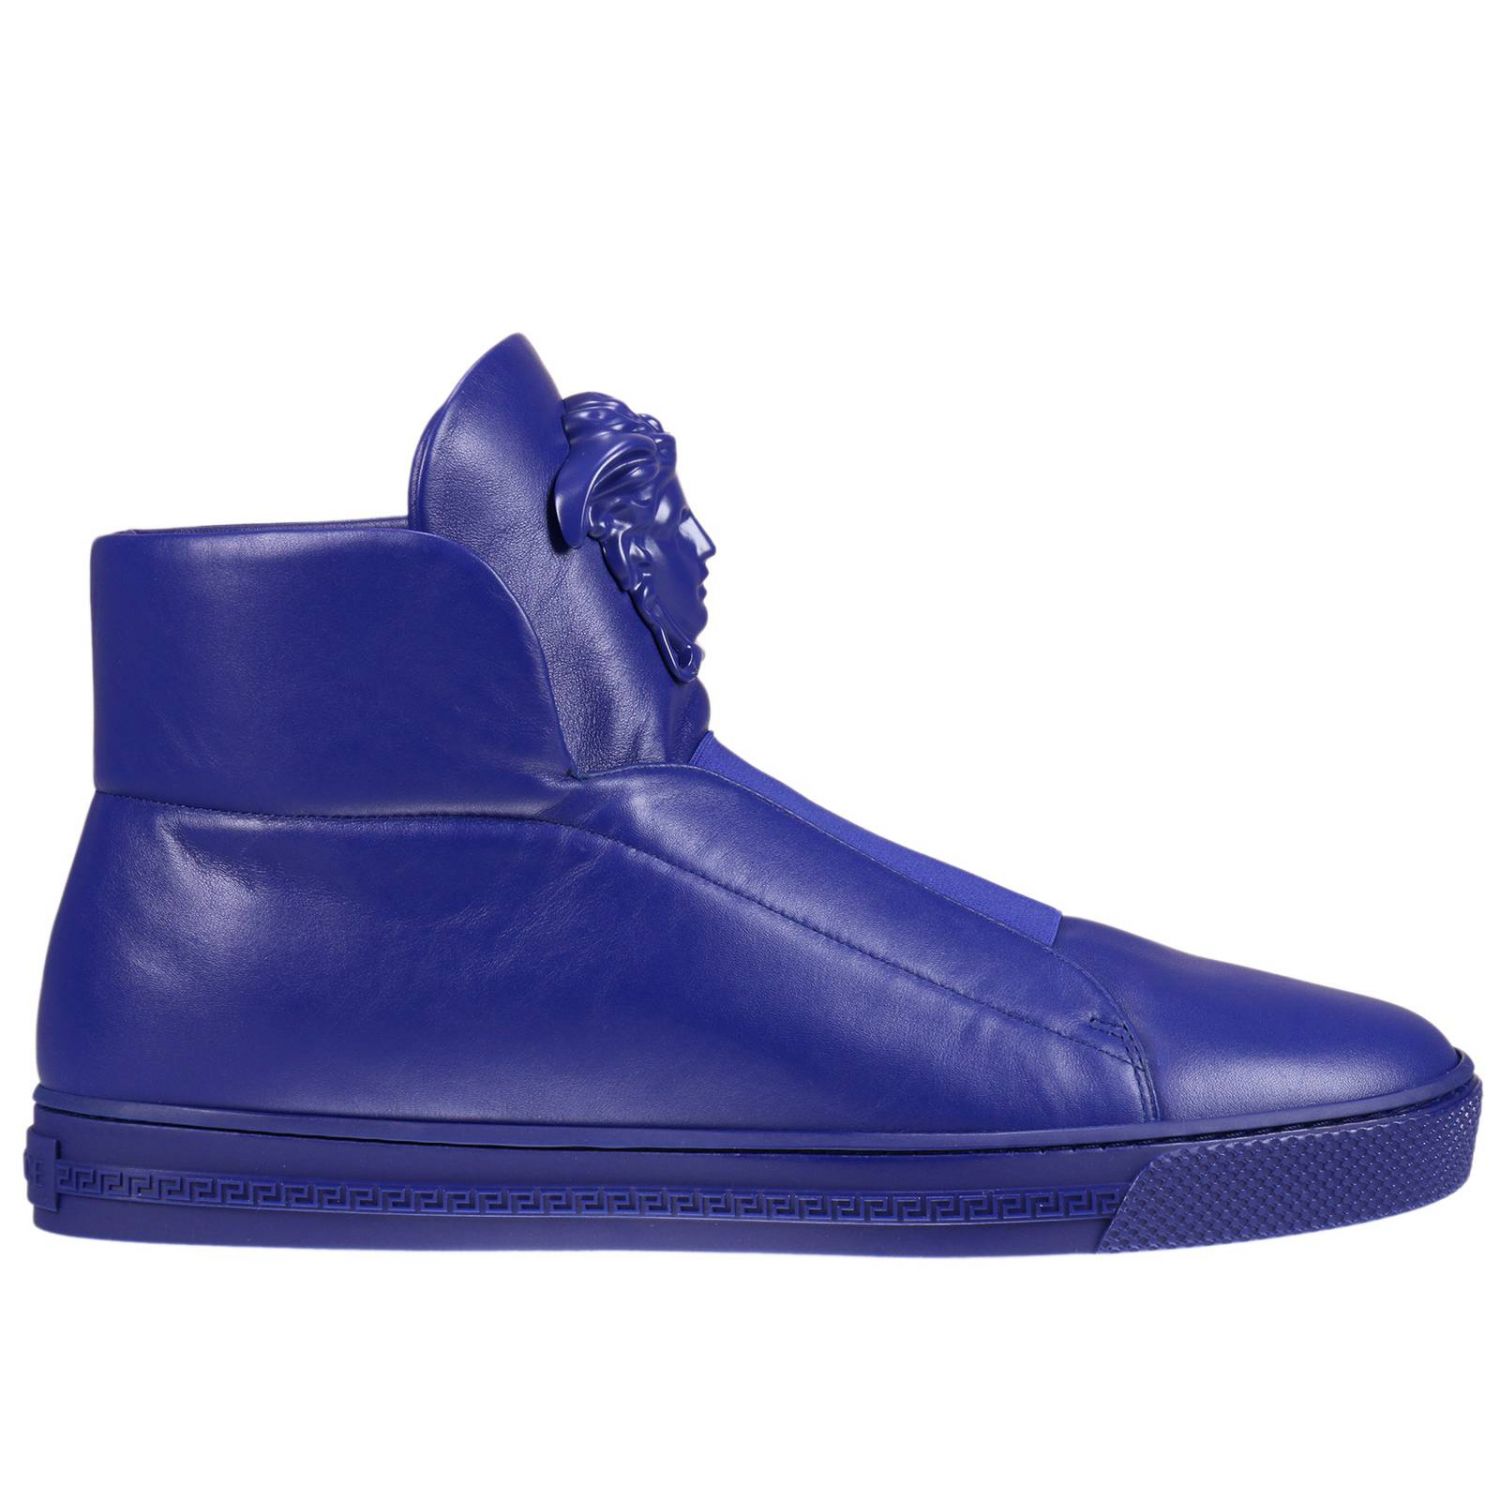 versace royal blue shoes